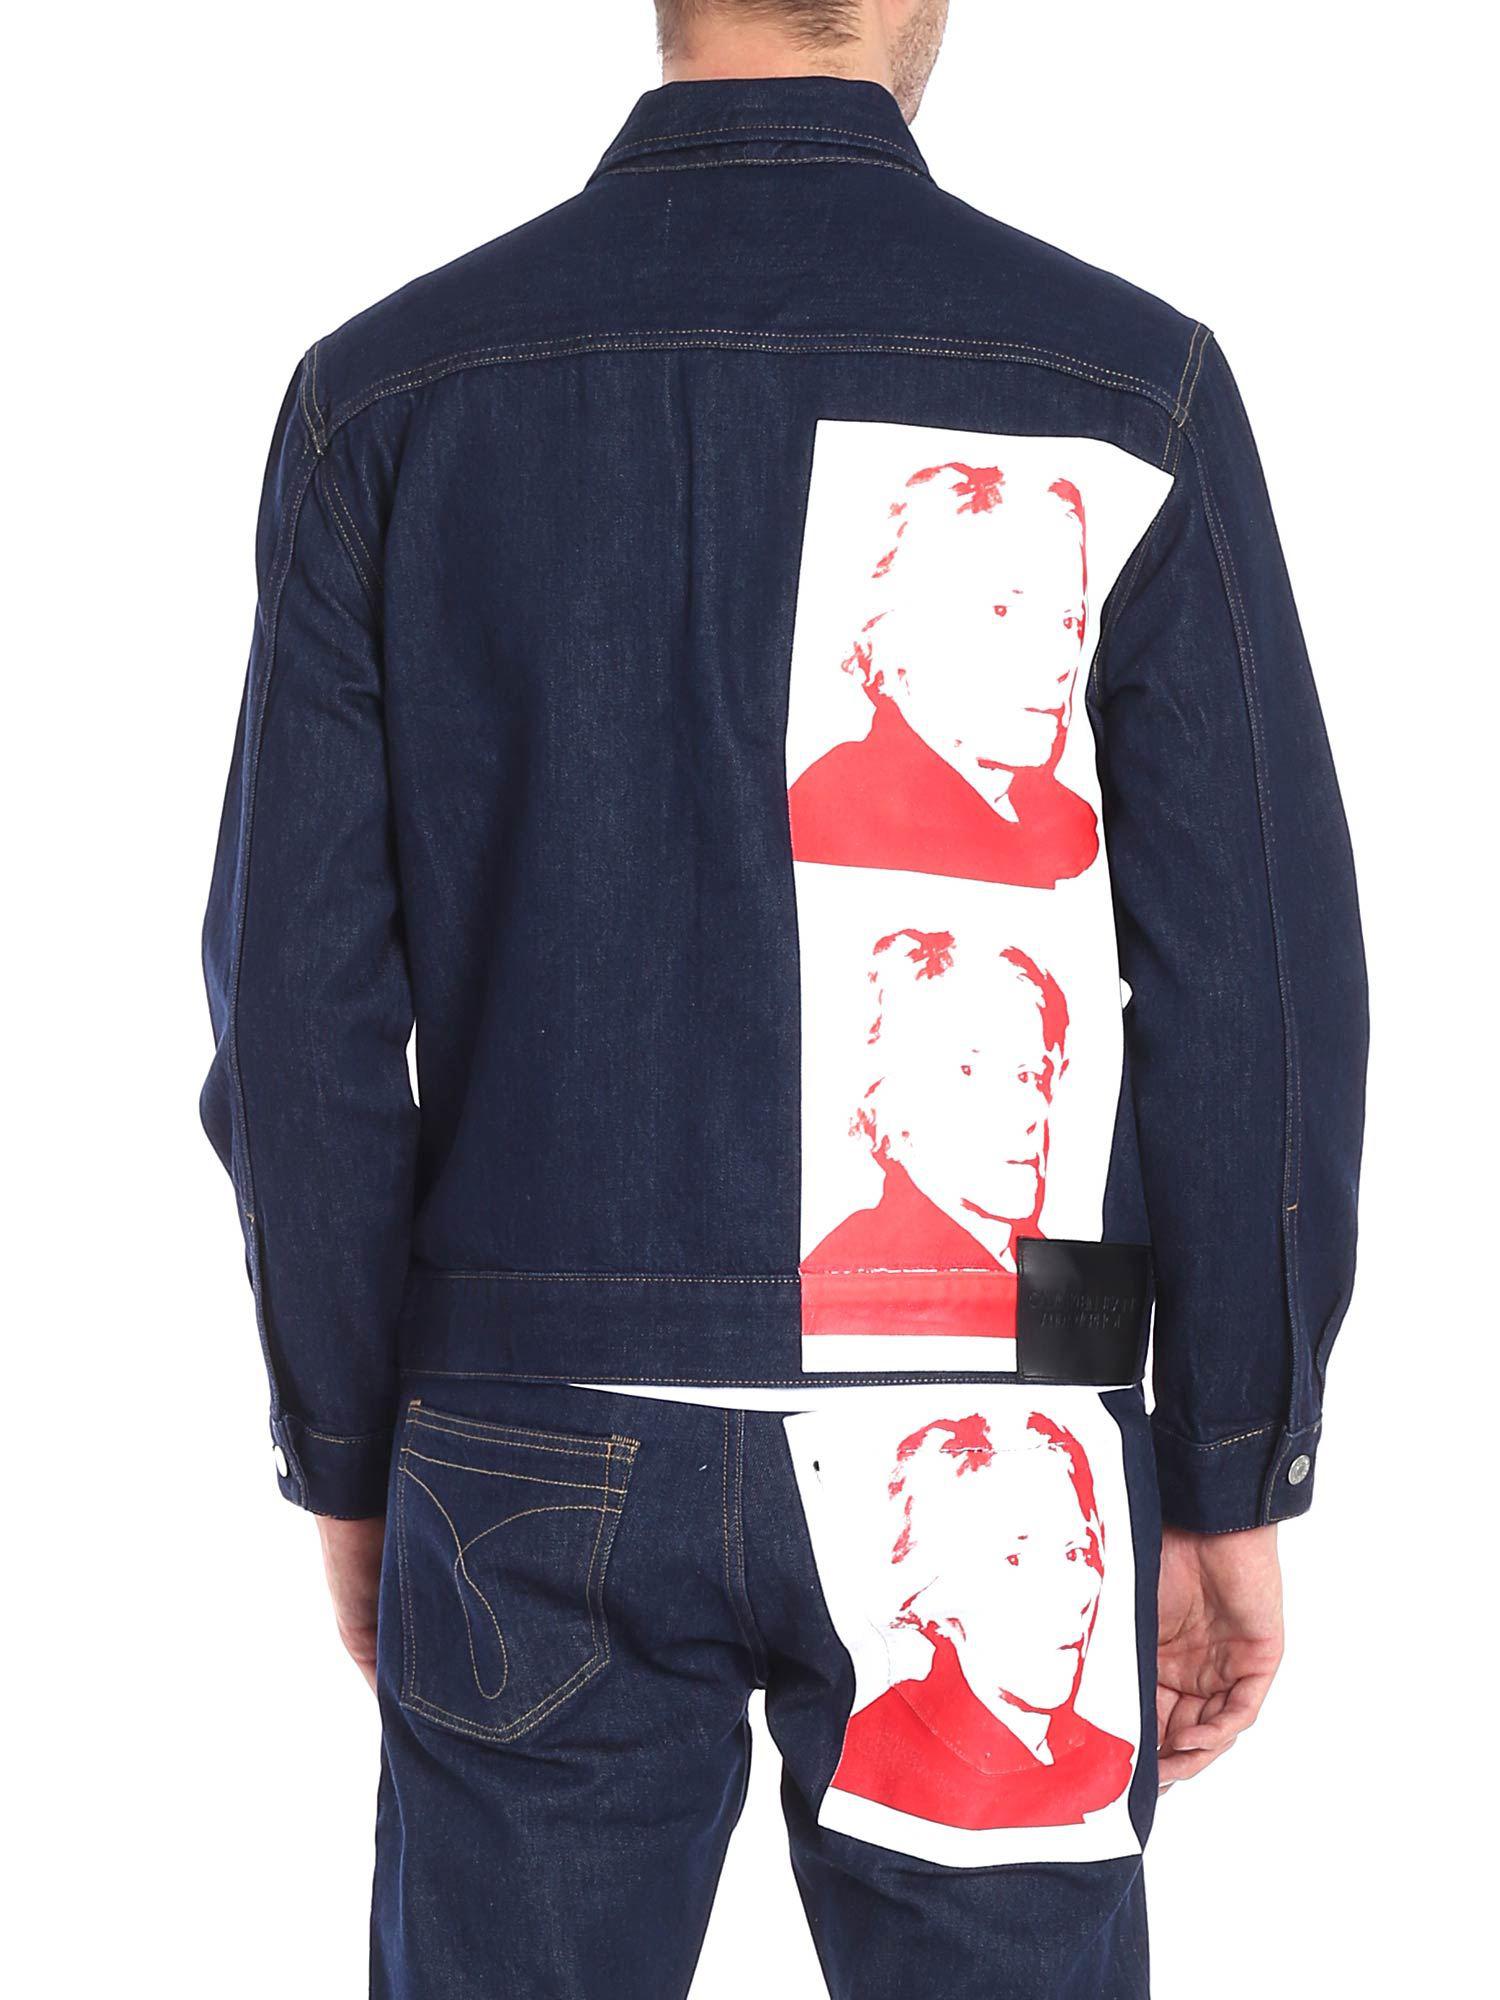 Calvin Klein Andy Warhol Denim Jacket in Blue for Men - Lyst